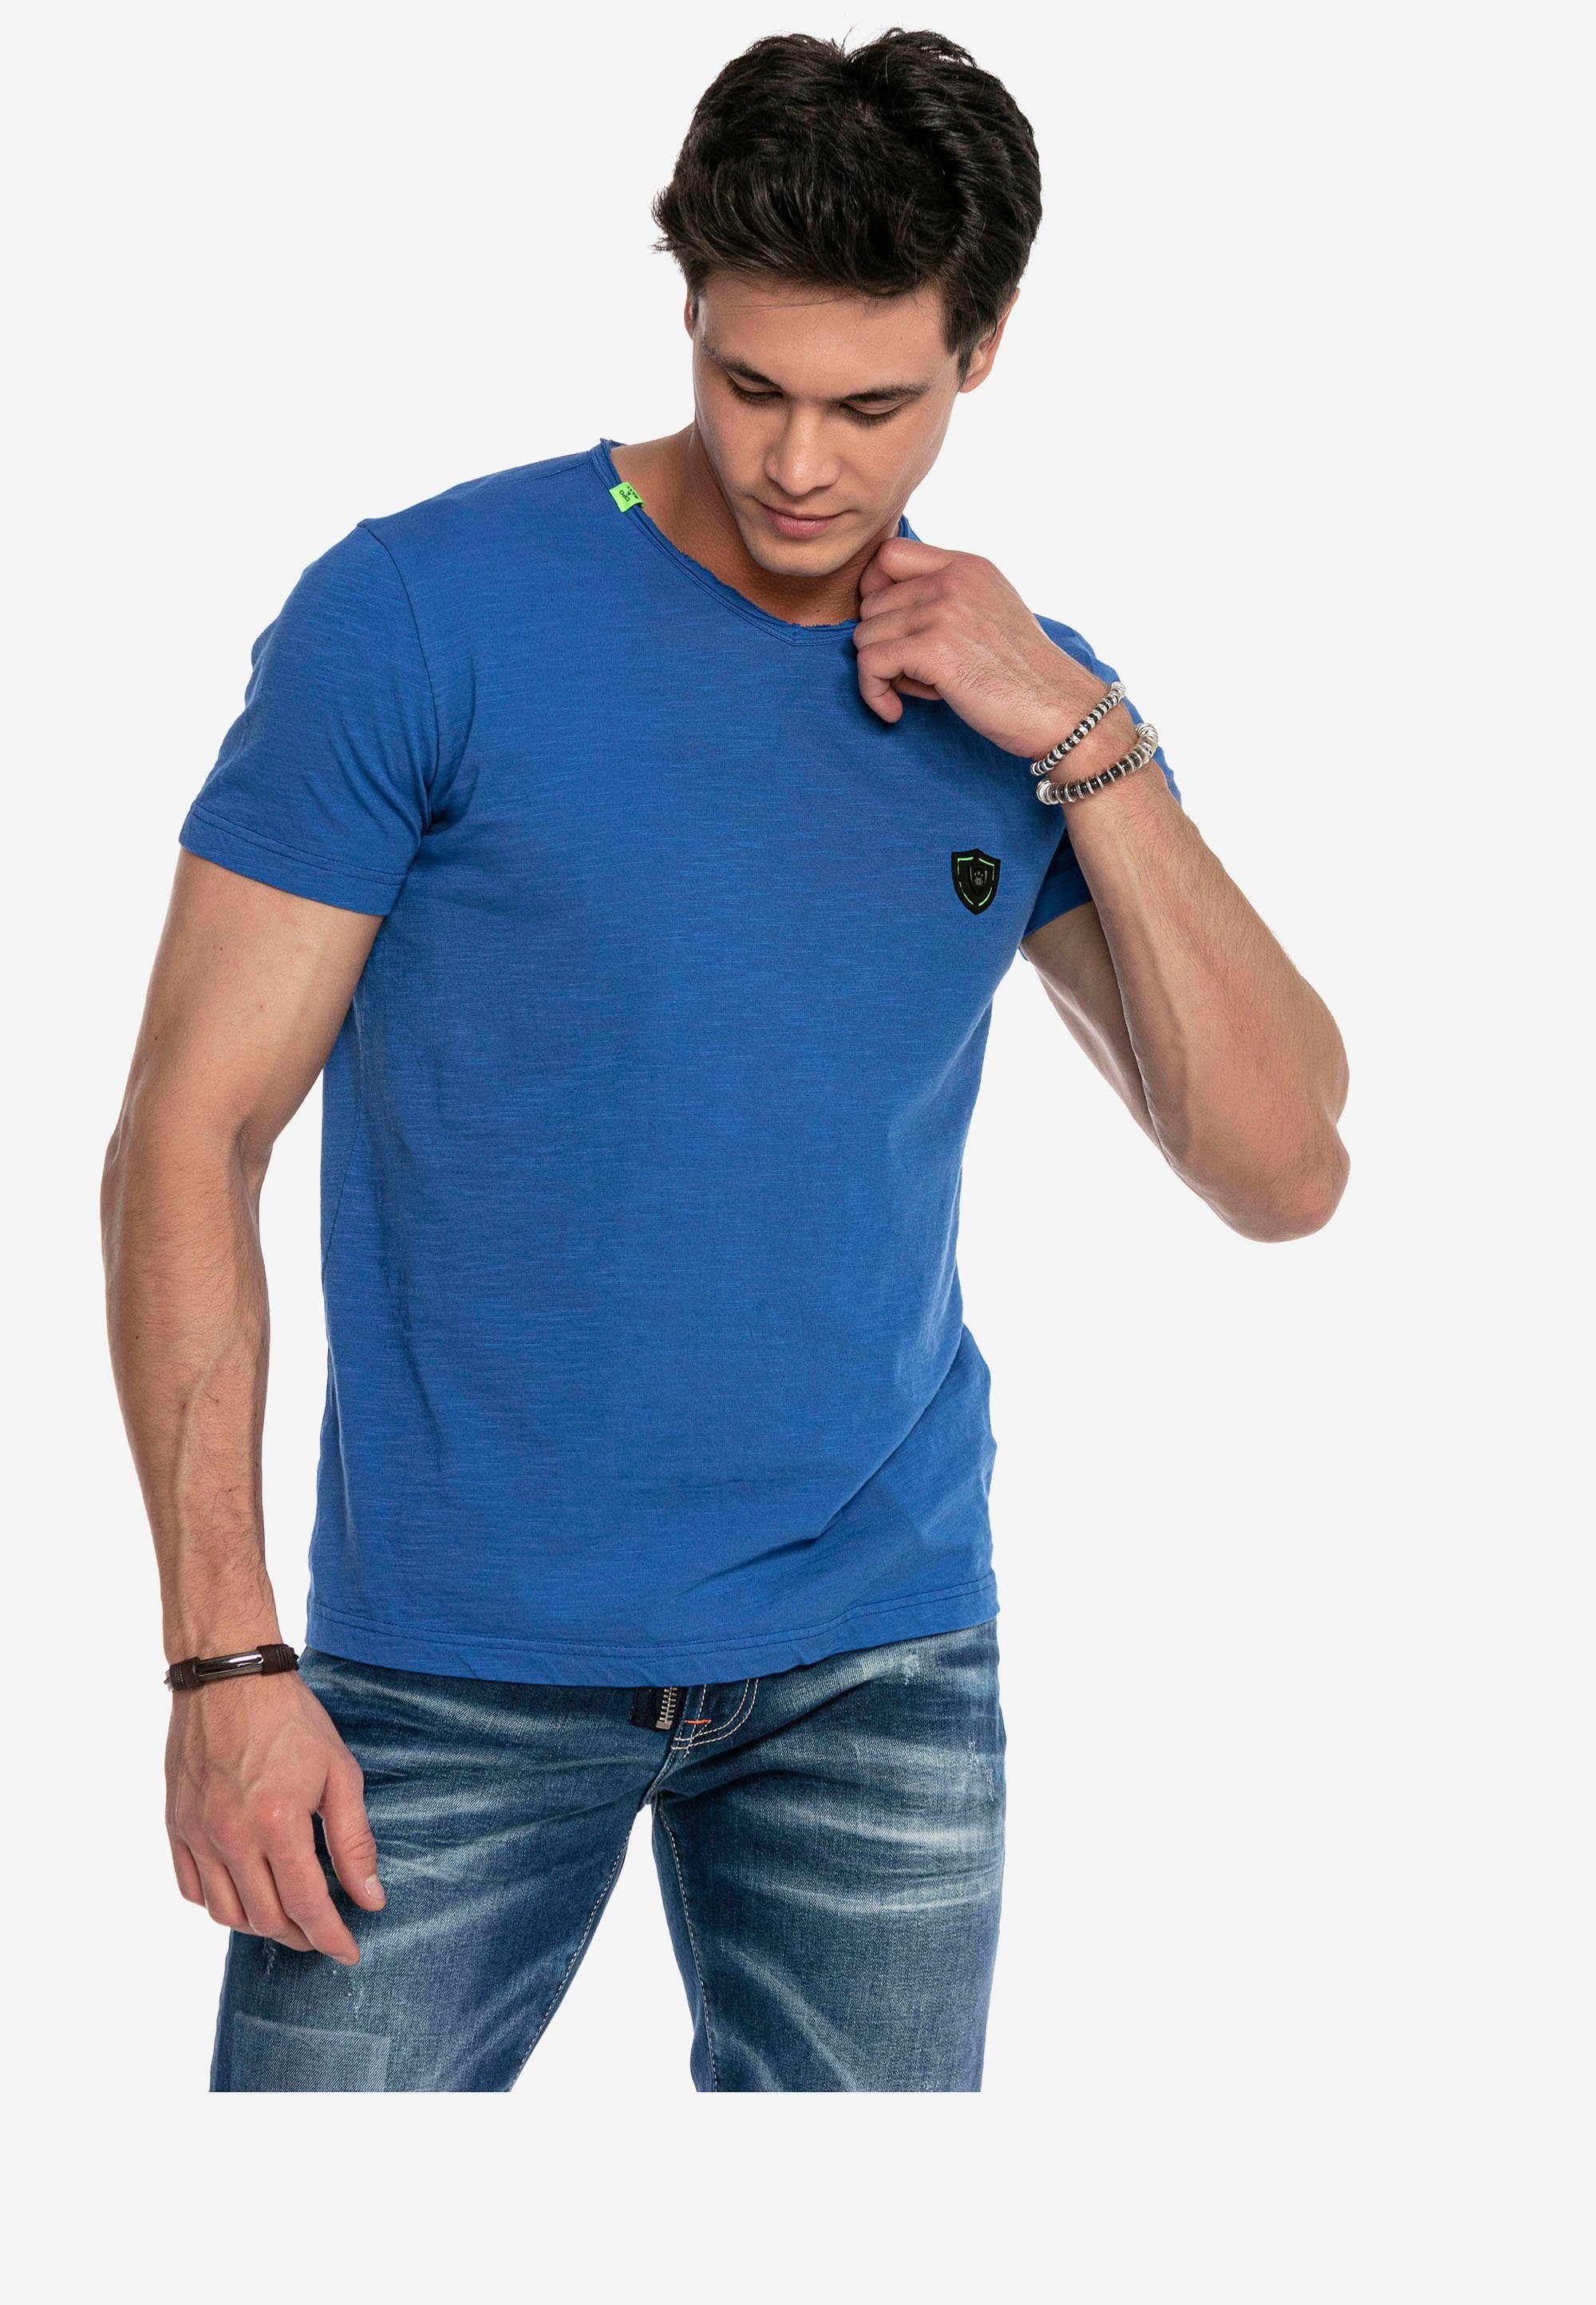 Cipo & Baxx T-Shirt CT648 im sportlichen Look blau